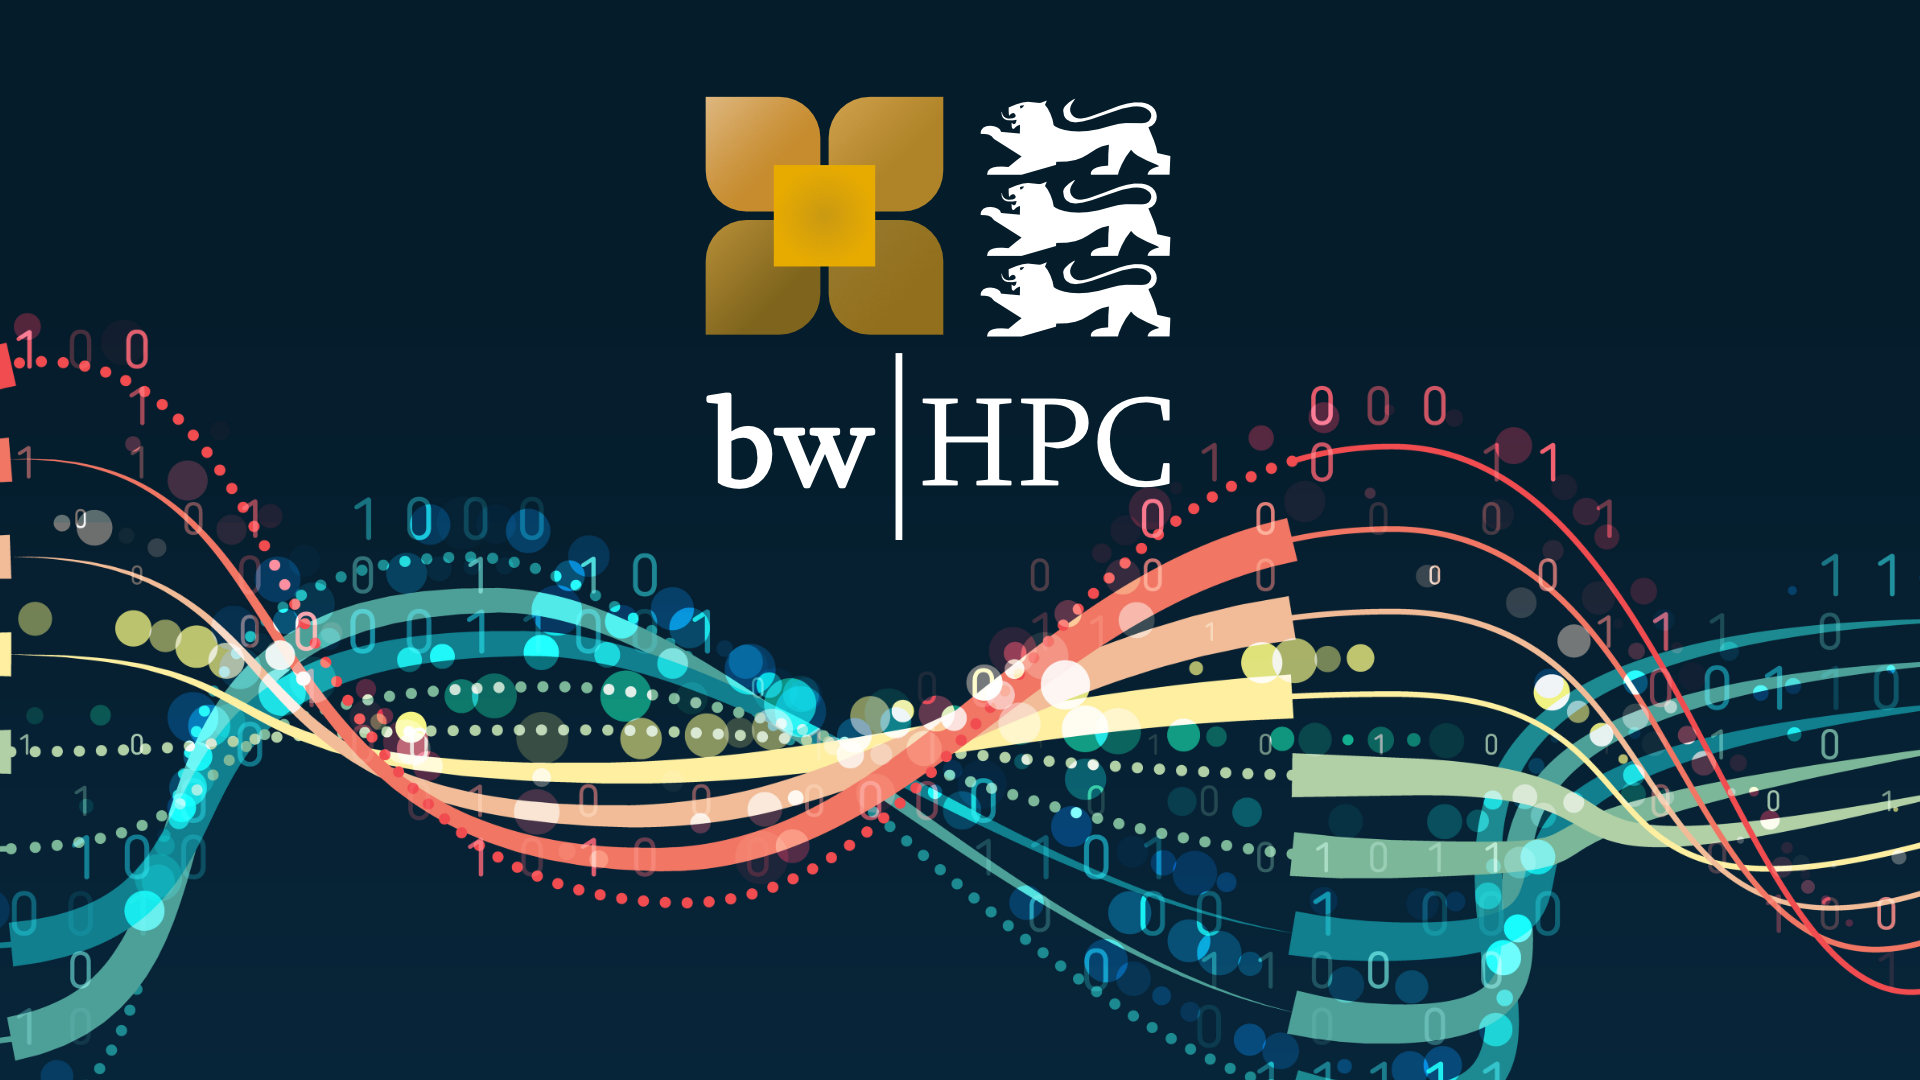 Futuristische Darstellung einer binären Kette mit bwHPC Logo